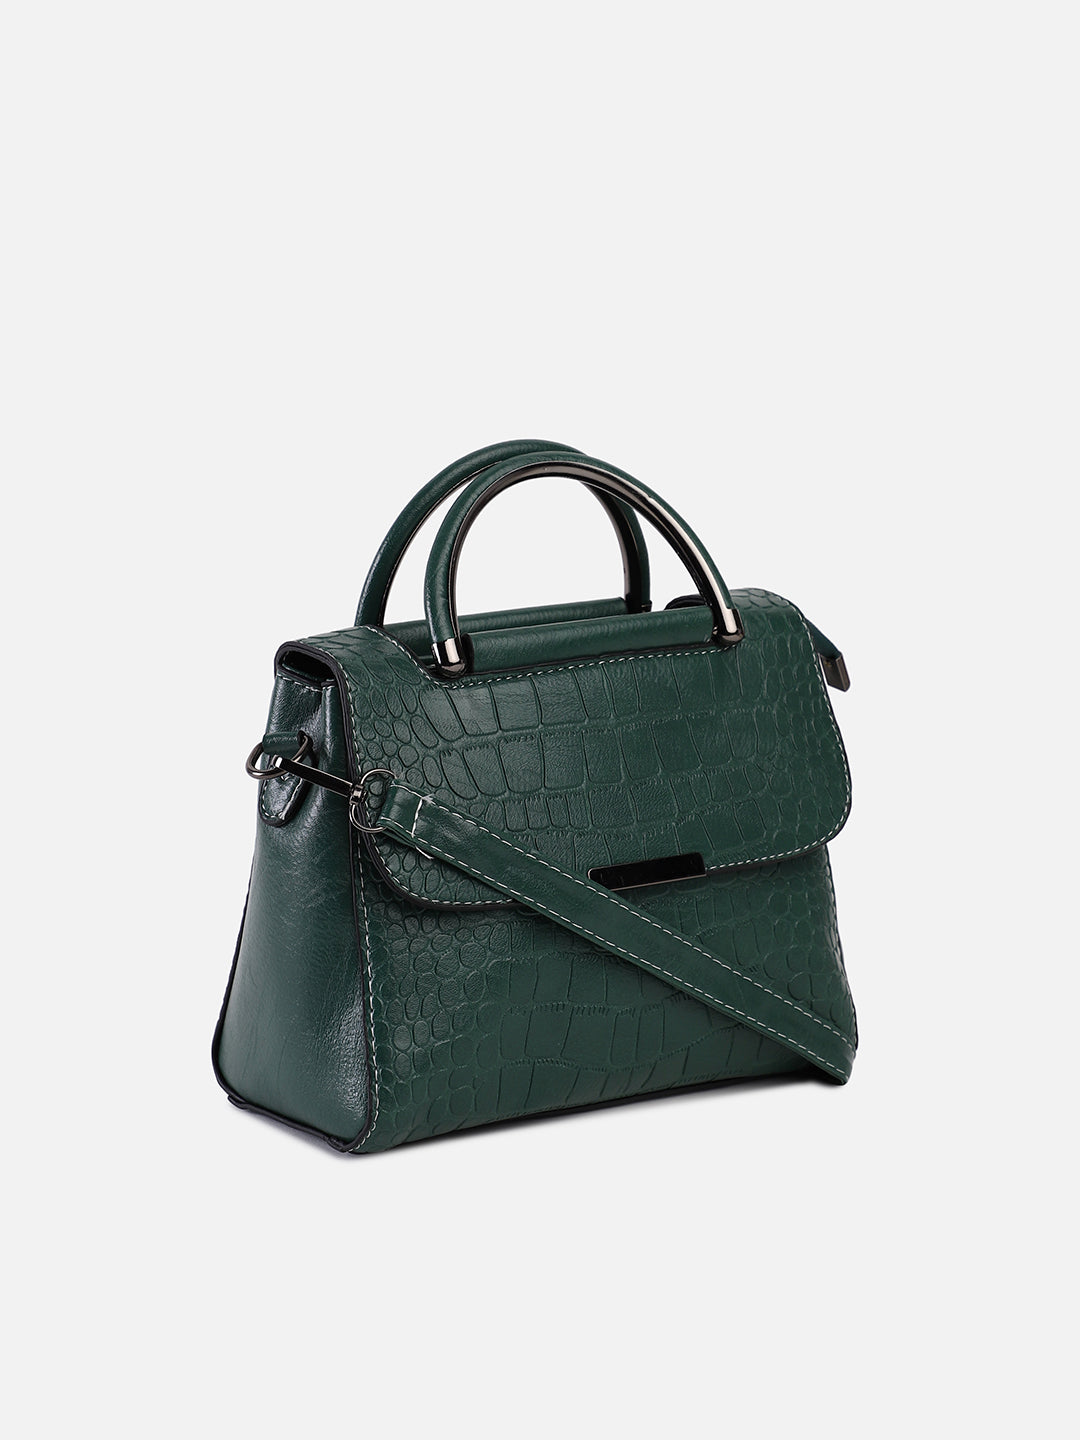 Louise Green Mini Bag